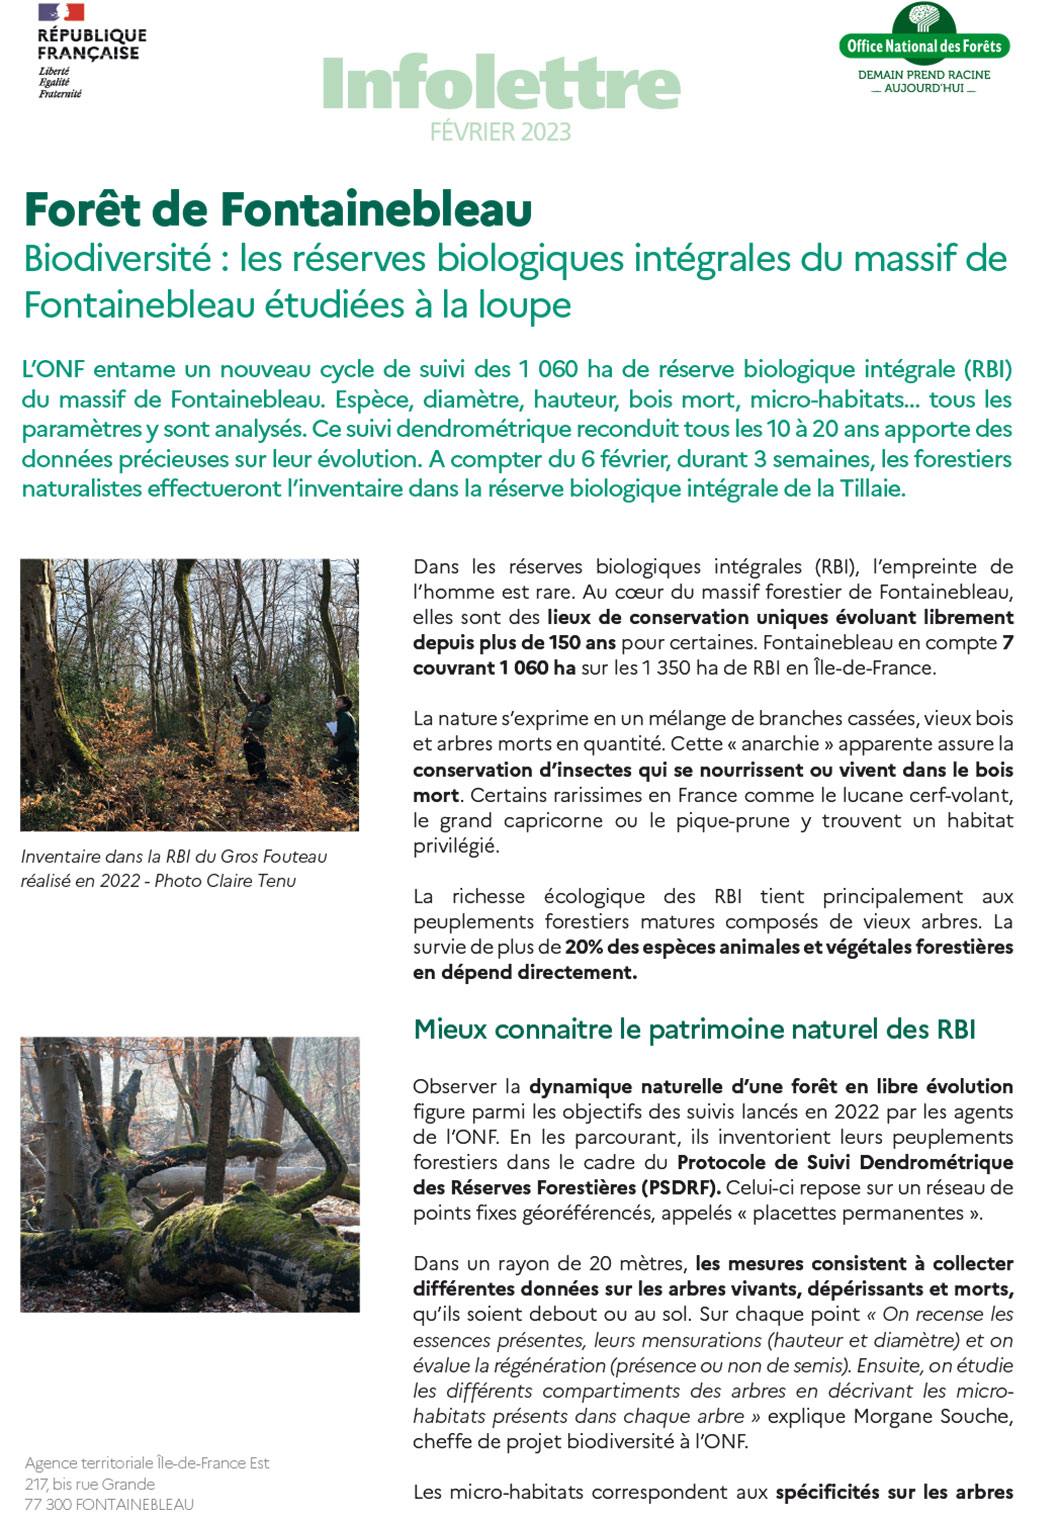 Biodiversité : les réserves biologiques intégrales du massif de Fontainebleau étudiées à la loupe